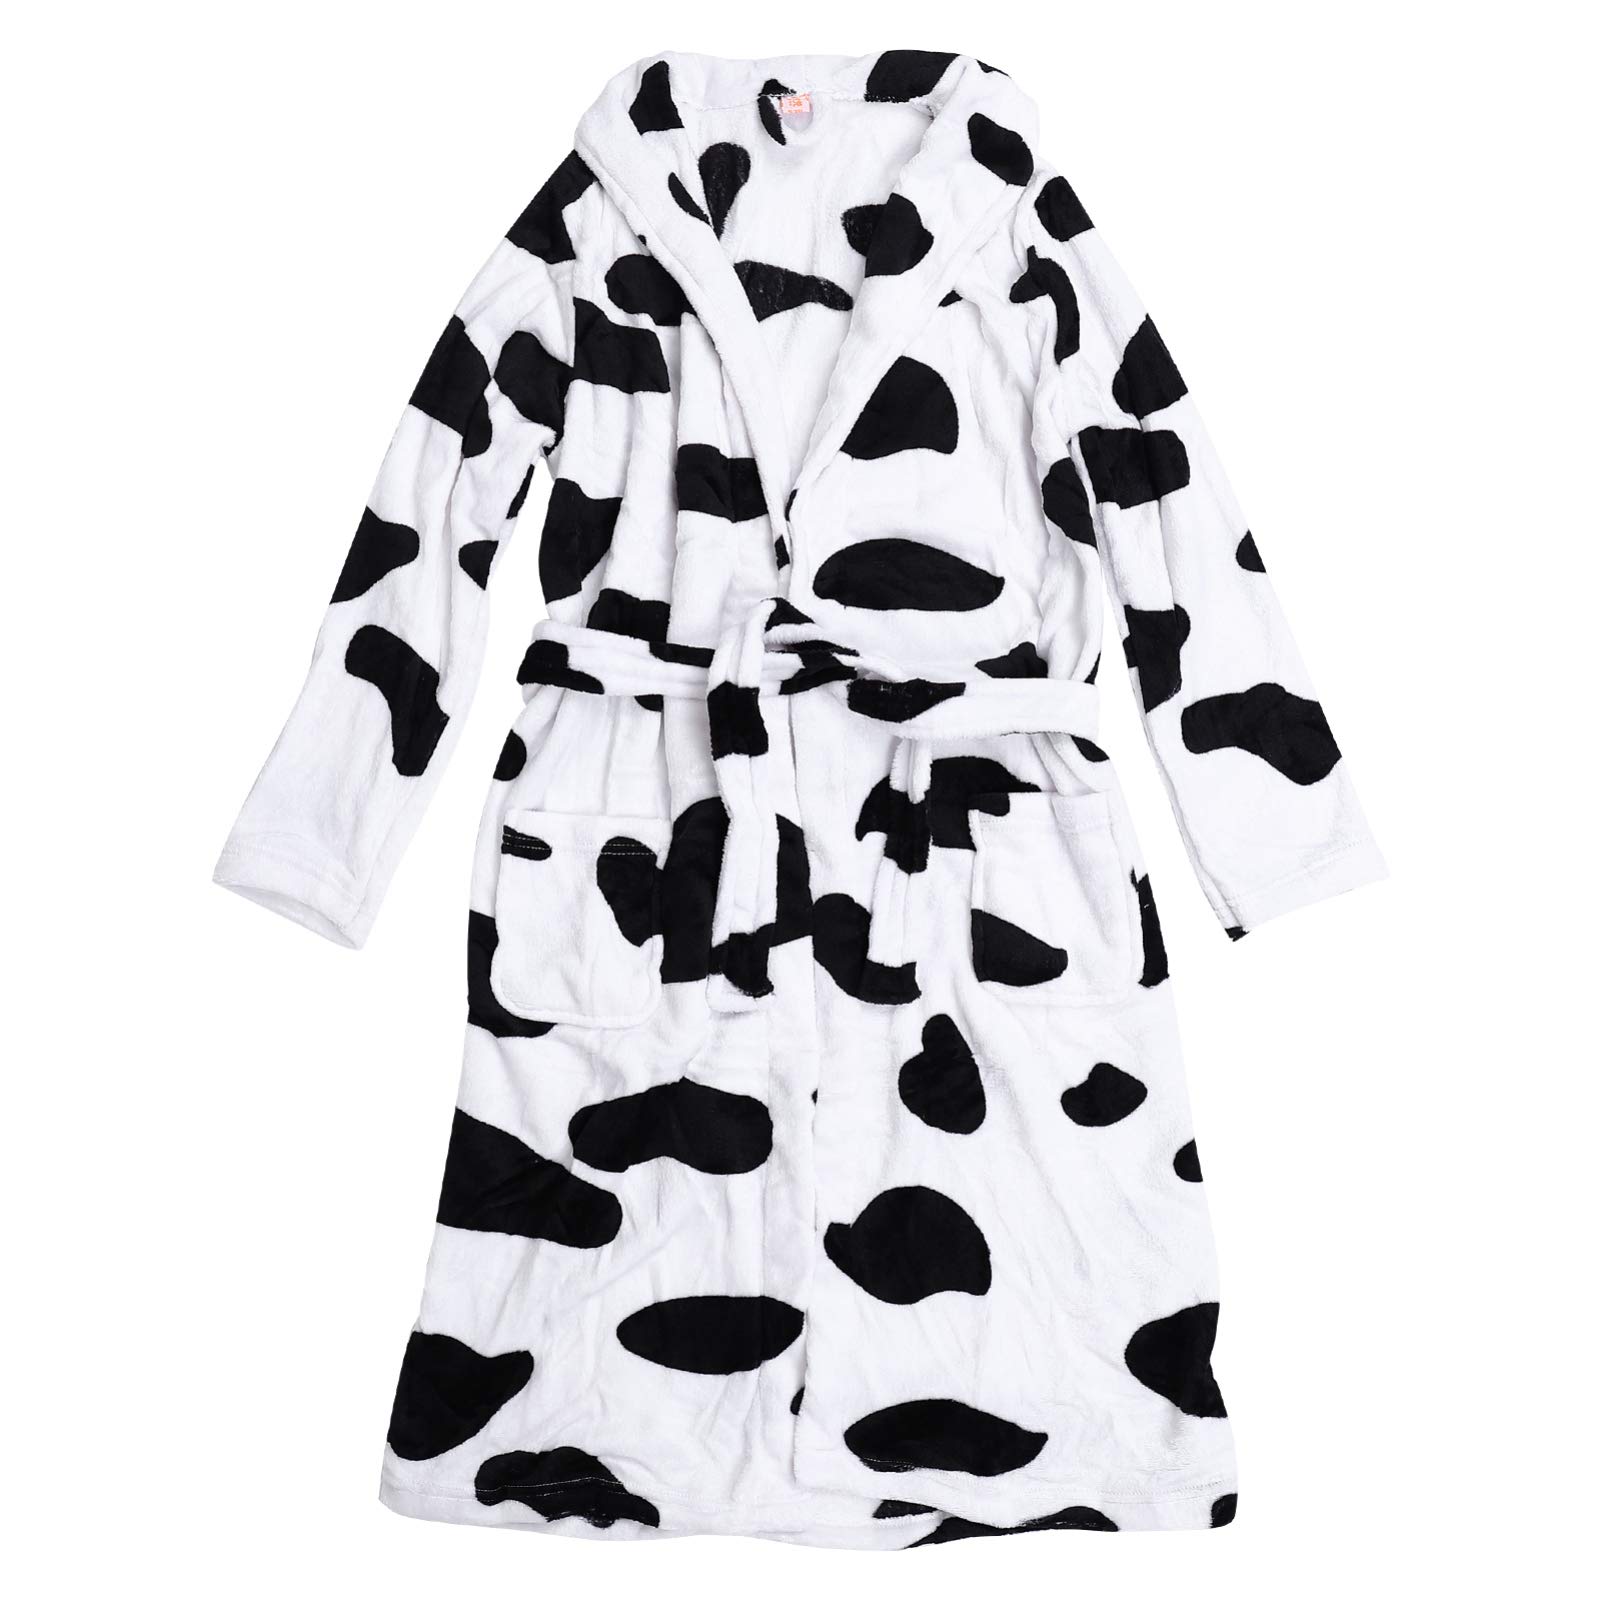 SOIMISS Damen Korallen Fleece Bademantel Plüsch Kuh Muster Weichen Kimono Robe Bequeme Warme Nachtwäsche für Frauen Teenager Mädchen (XL)